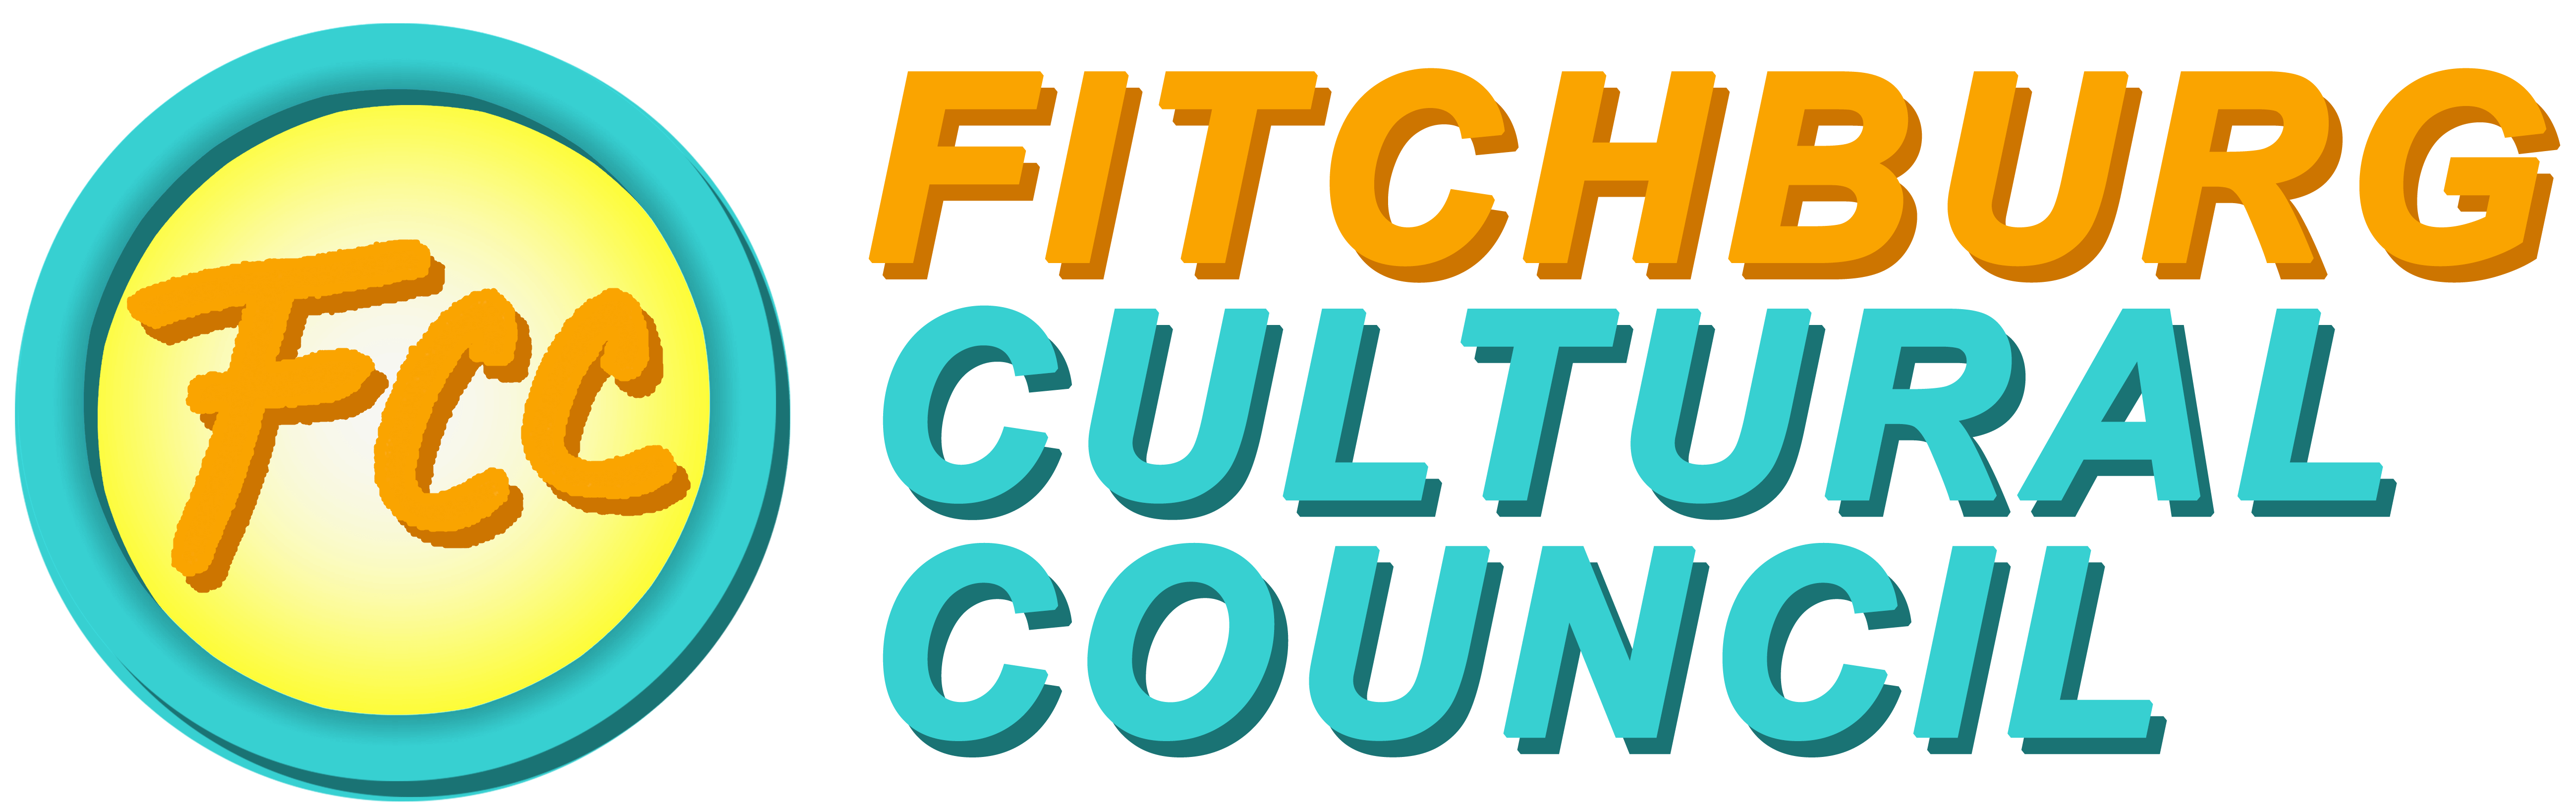 Fitchburg Cultural Council logo